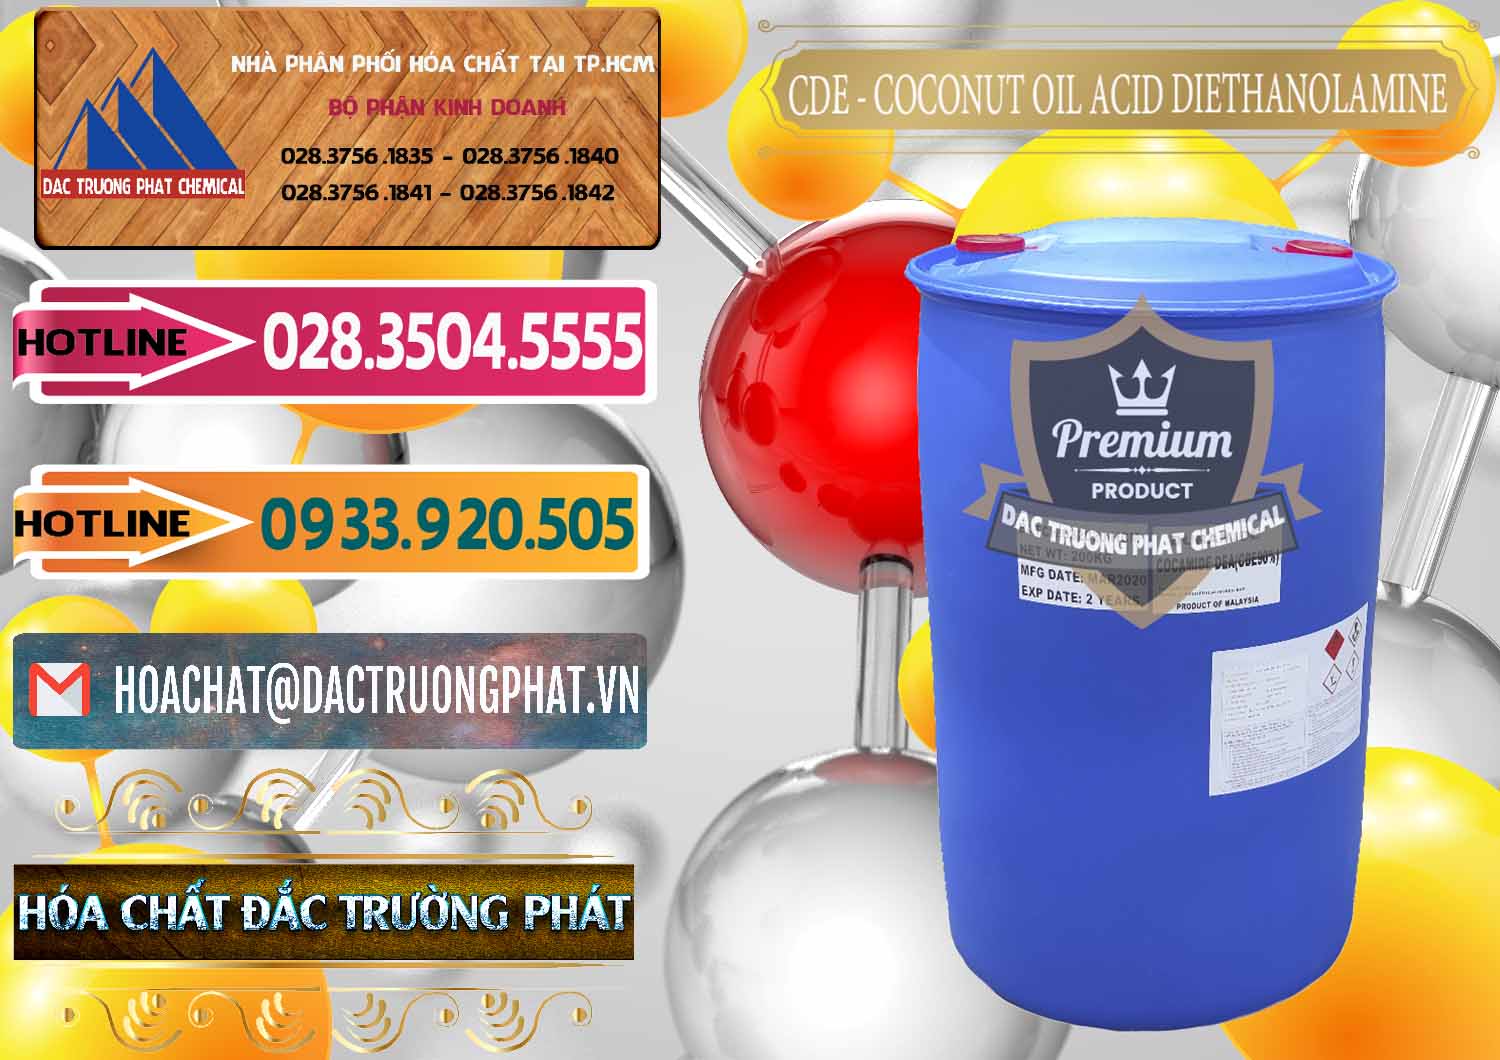 Công ty bán & cung ứng CDE - Coconut Oil Acid Diethanolamine Mã Lai Malaysia - 0311 - Đơn vị chuyên phân phối và bán hóa chất tại TP.HCM - dactruongphat.vn